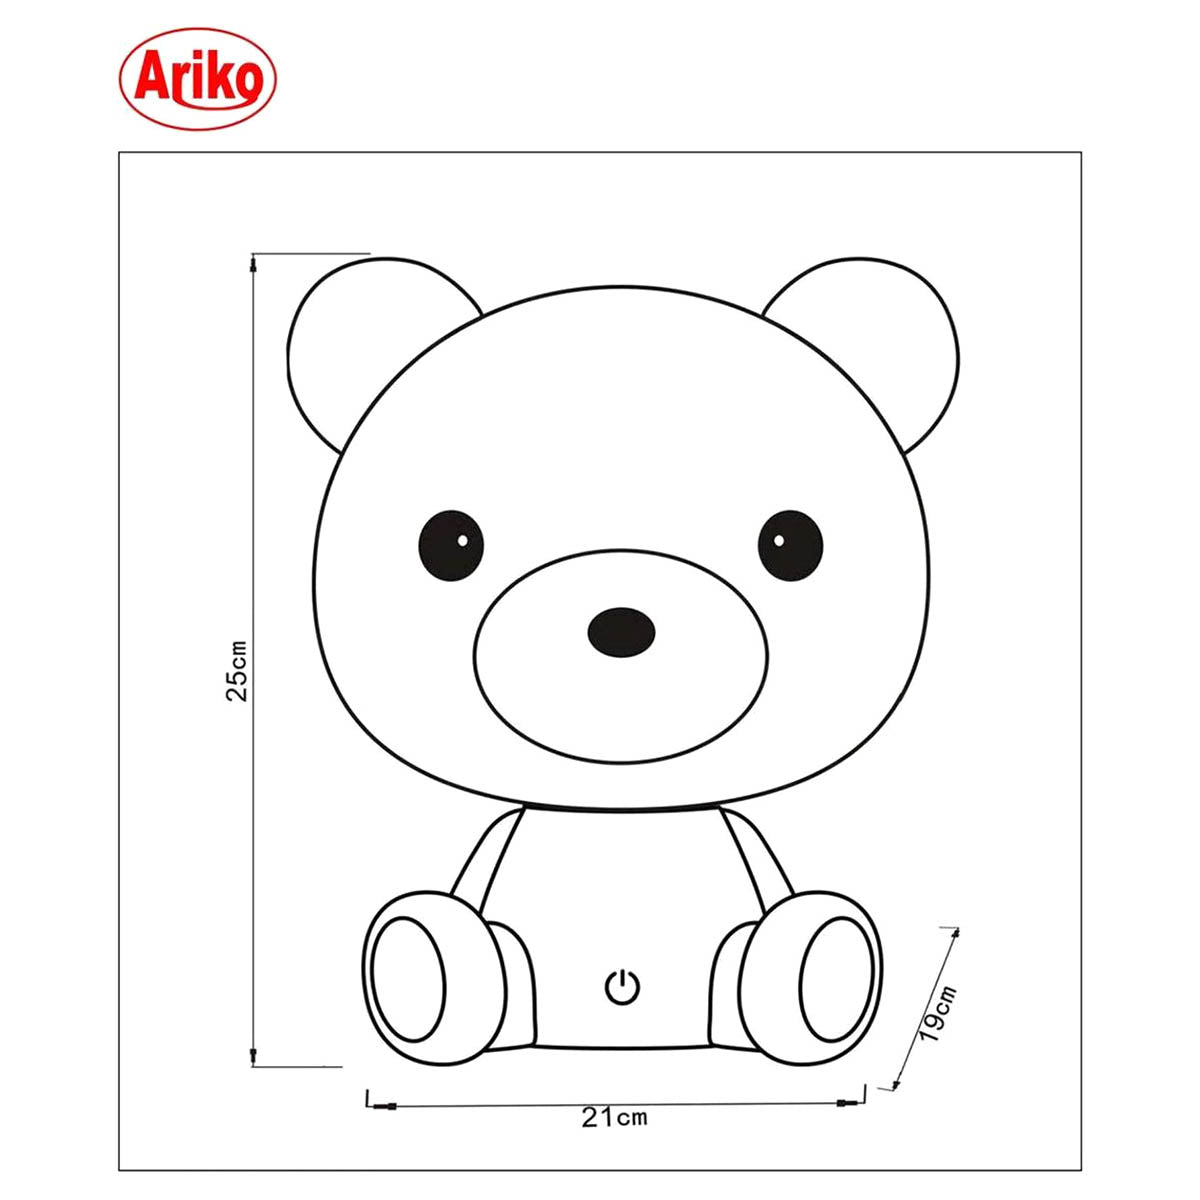 Ariko XL Bär Tischlampe Kinderzimmer Babyzimmer - Nachtlicht - LED dimmbar - 3 Stufen dimmbar - Weiß - Teddybär